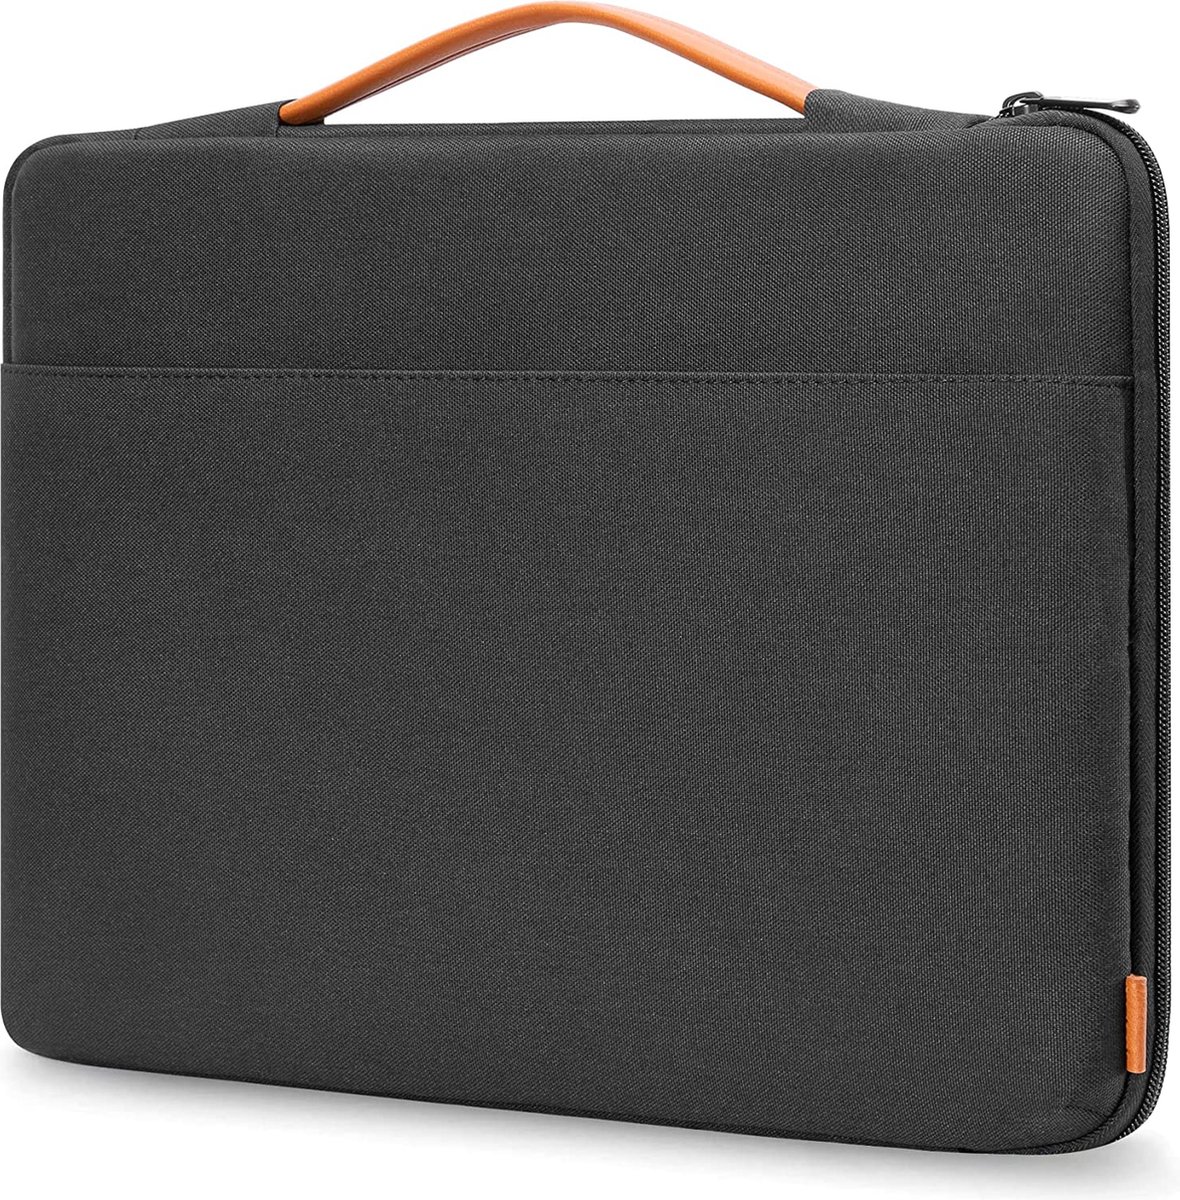 15-15.6 inch laptop sleeve case waterbestendig voor laptops, notebooks, ultrabooks, netbooks shockproof laptophoes tas aktetas